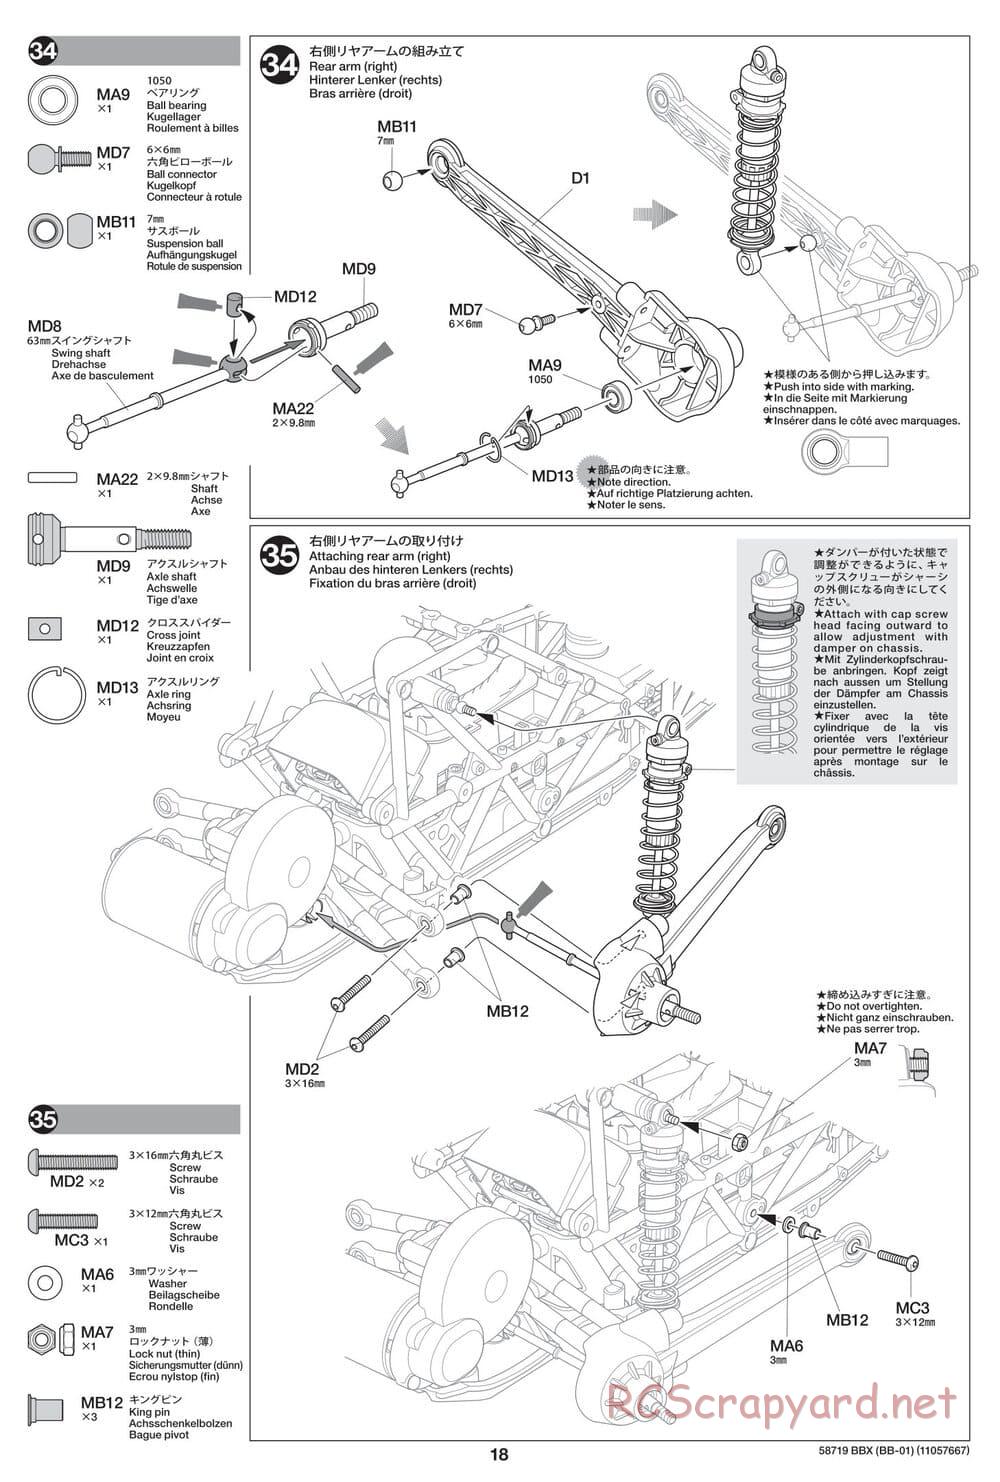 Tamiya - BBX - BB-01 Chassis - Manual - Page 18